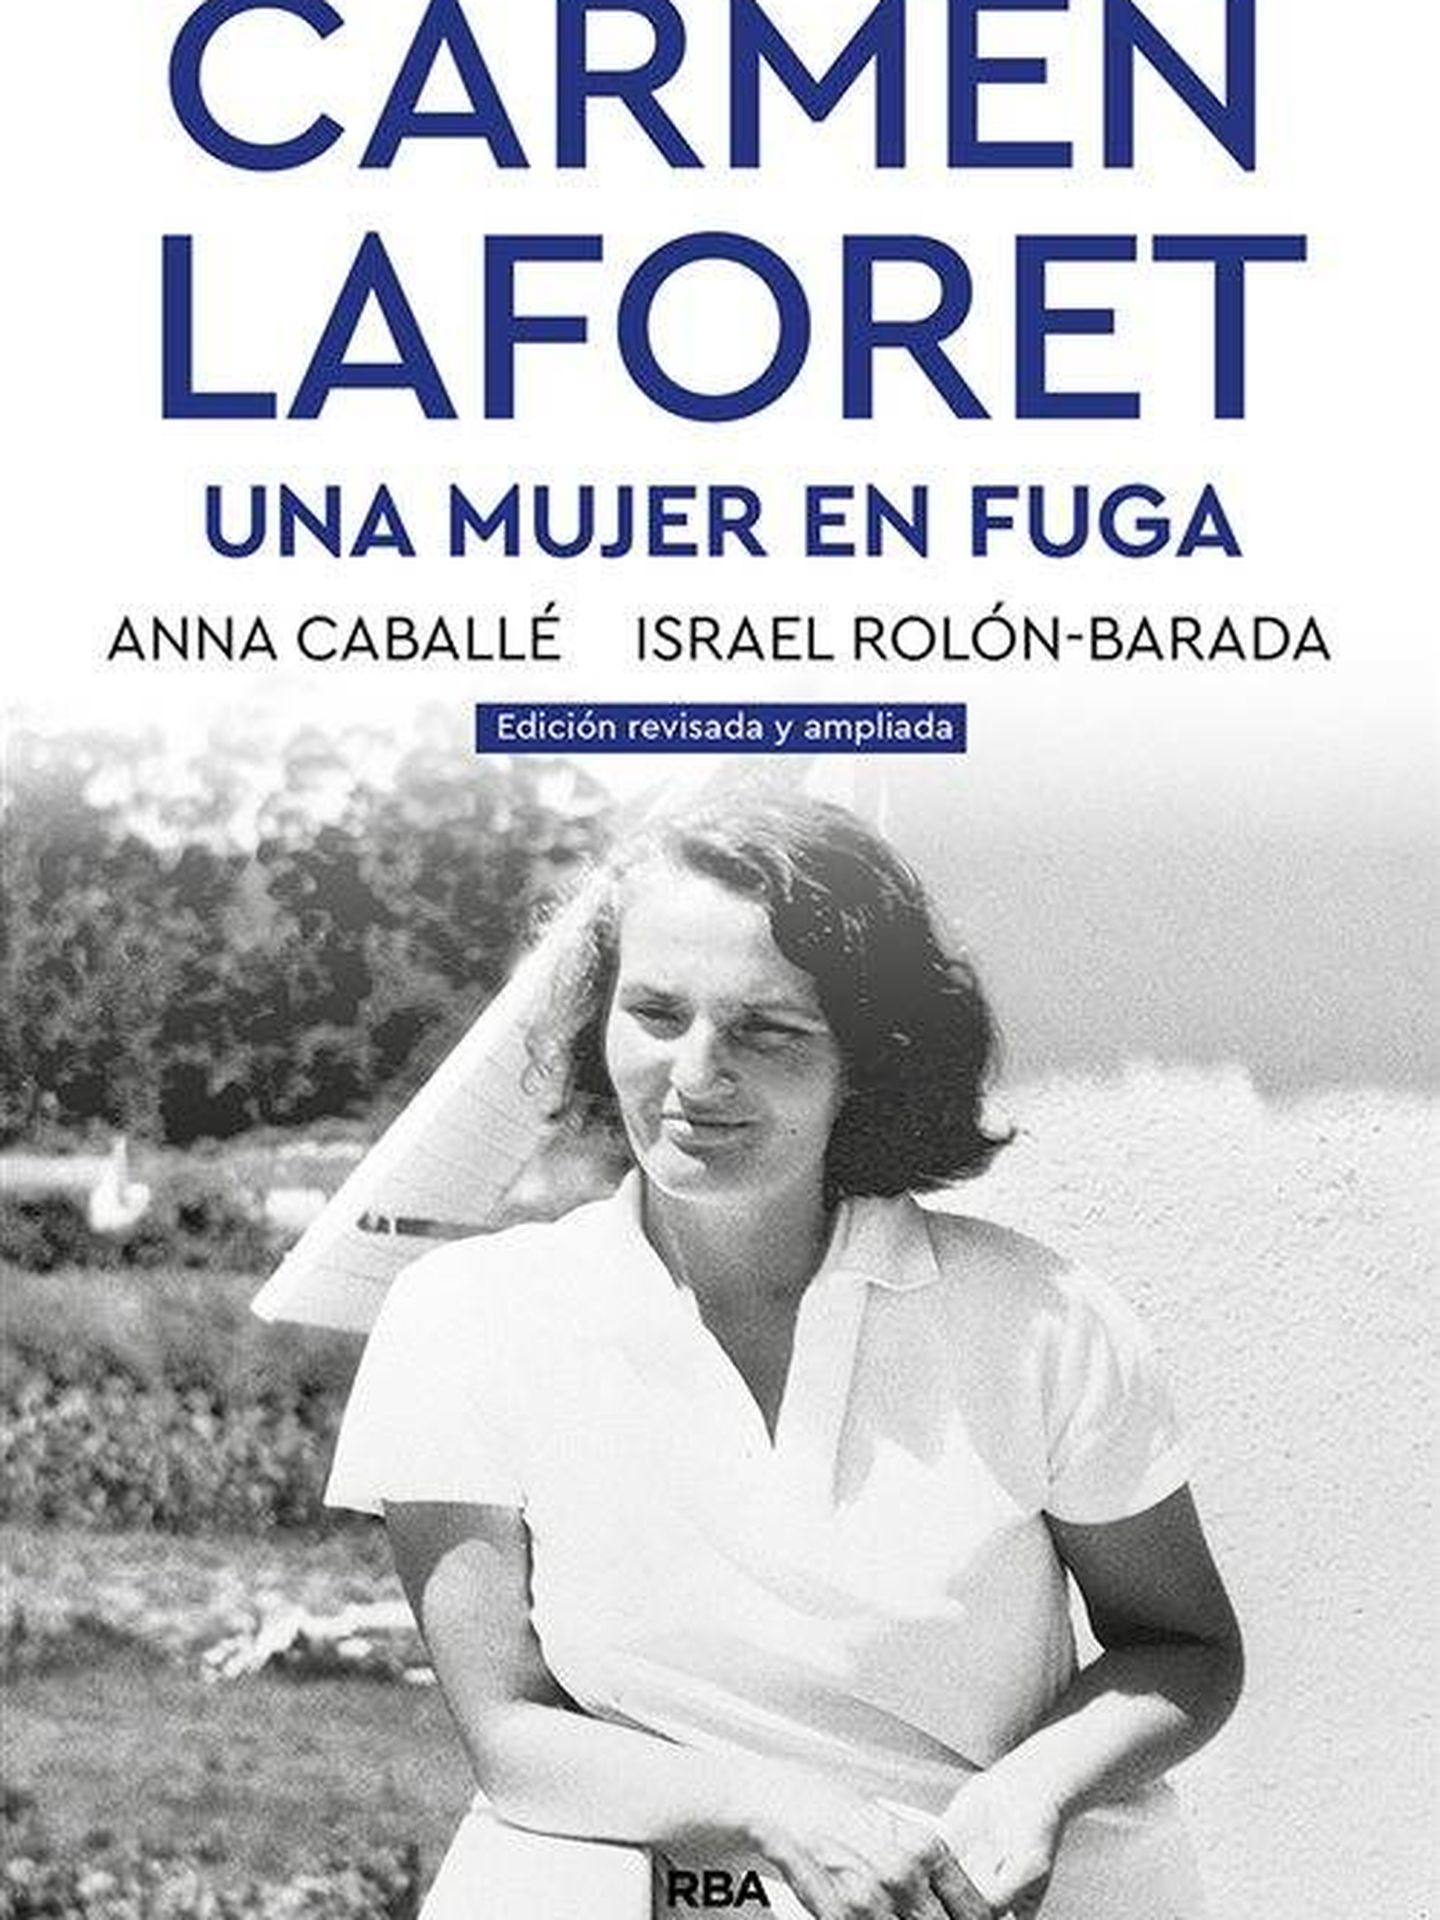 'Carmen Laforet. Una mujer en fuga'. (RBA)